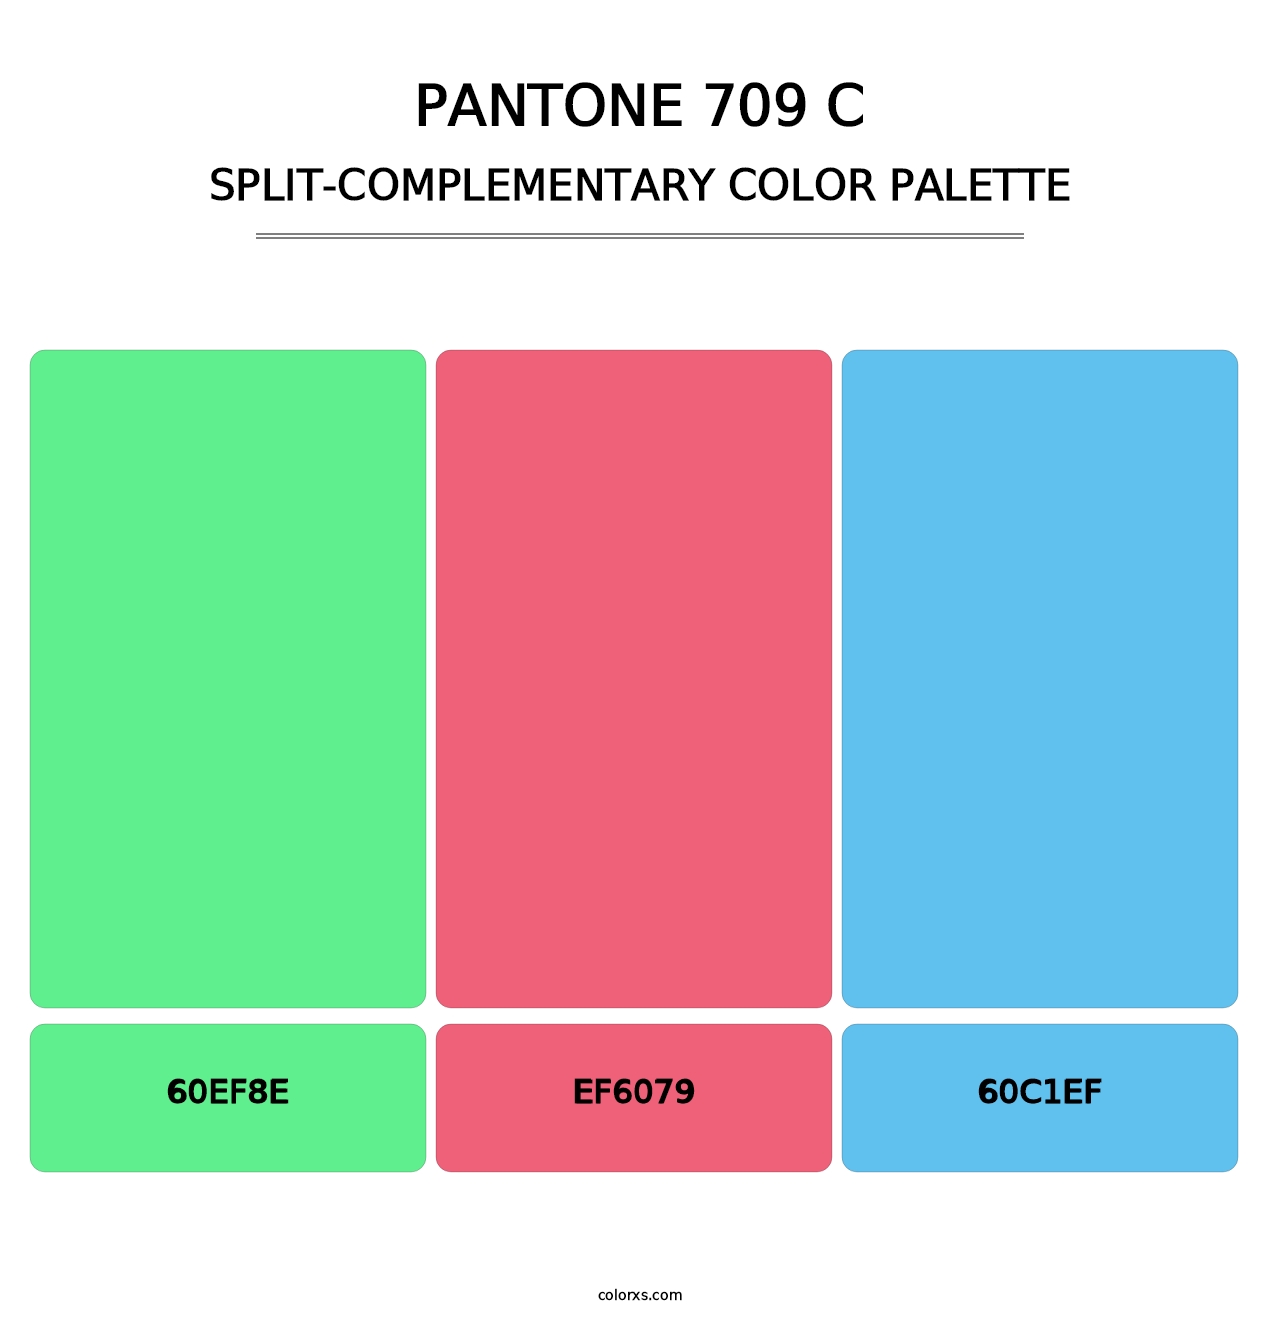 PANTONE 709 C - Split-Complementary Color Palette